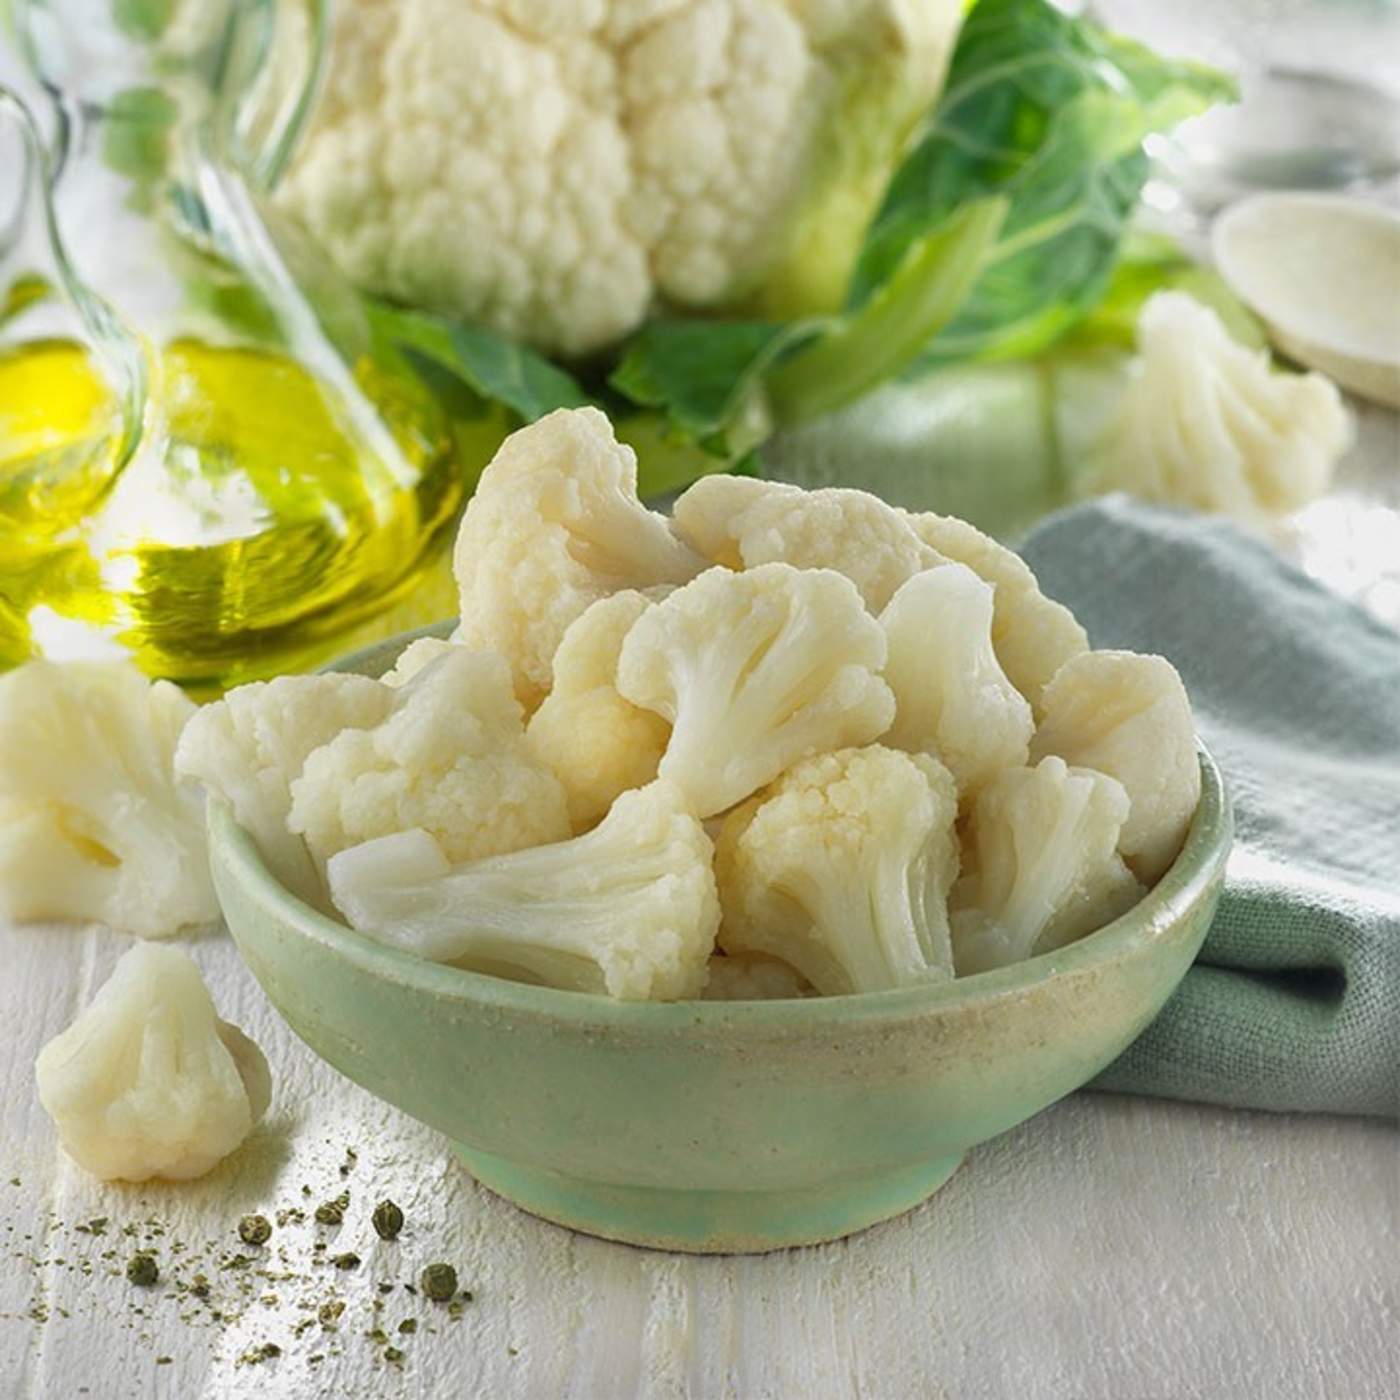 Beneficios de la coliflor confirmados por la ciencia